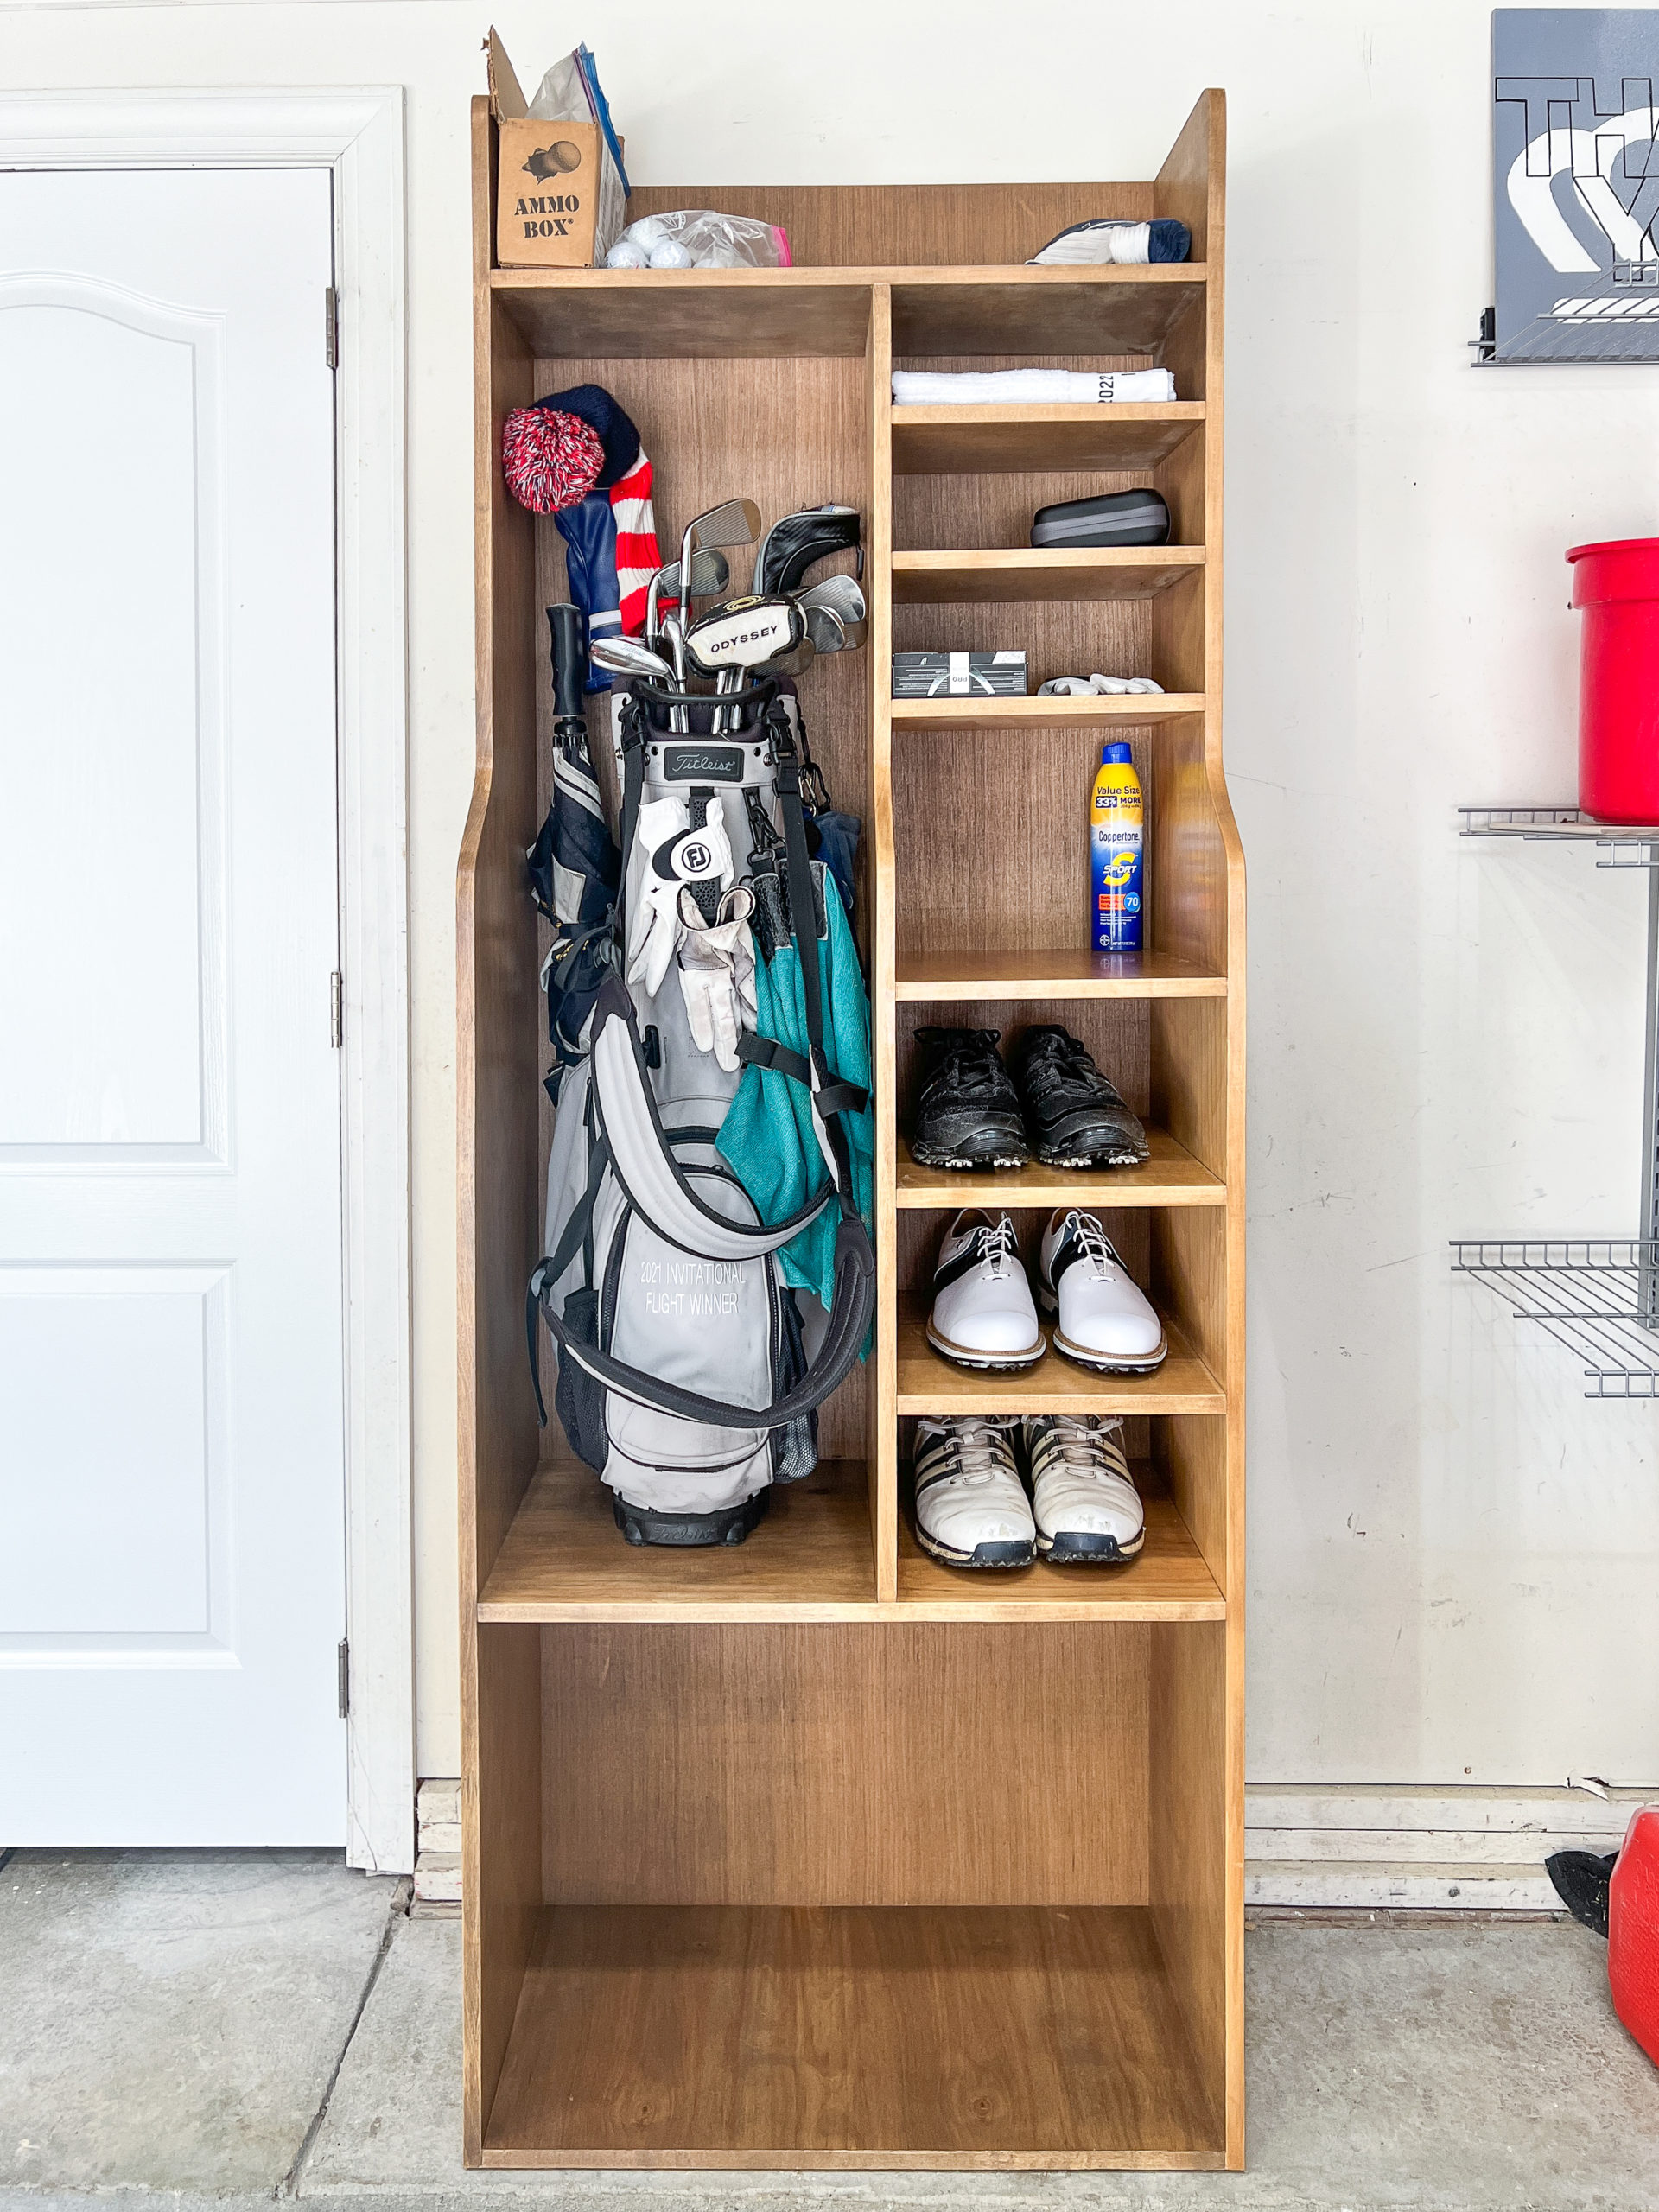 Heavy-Duty Golf Storage  Golf bags, Golf, Golf room